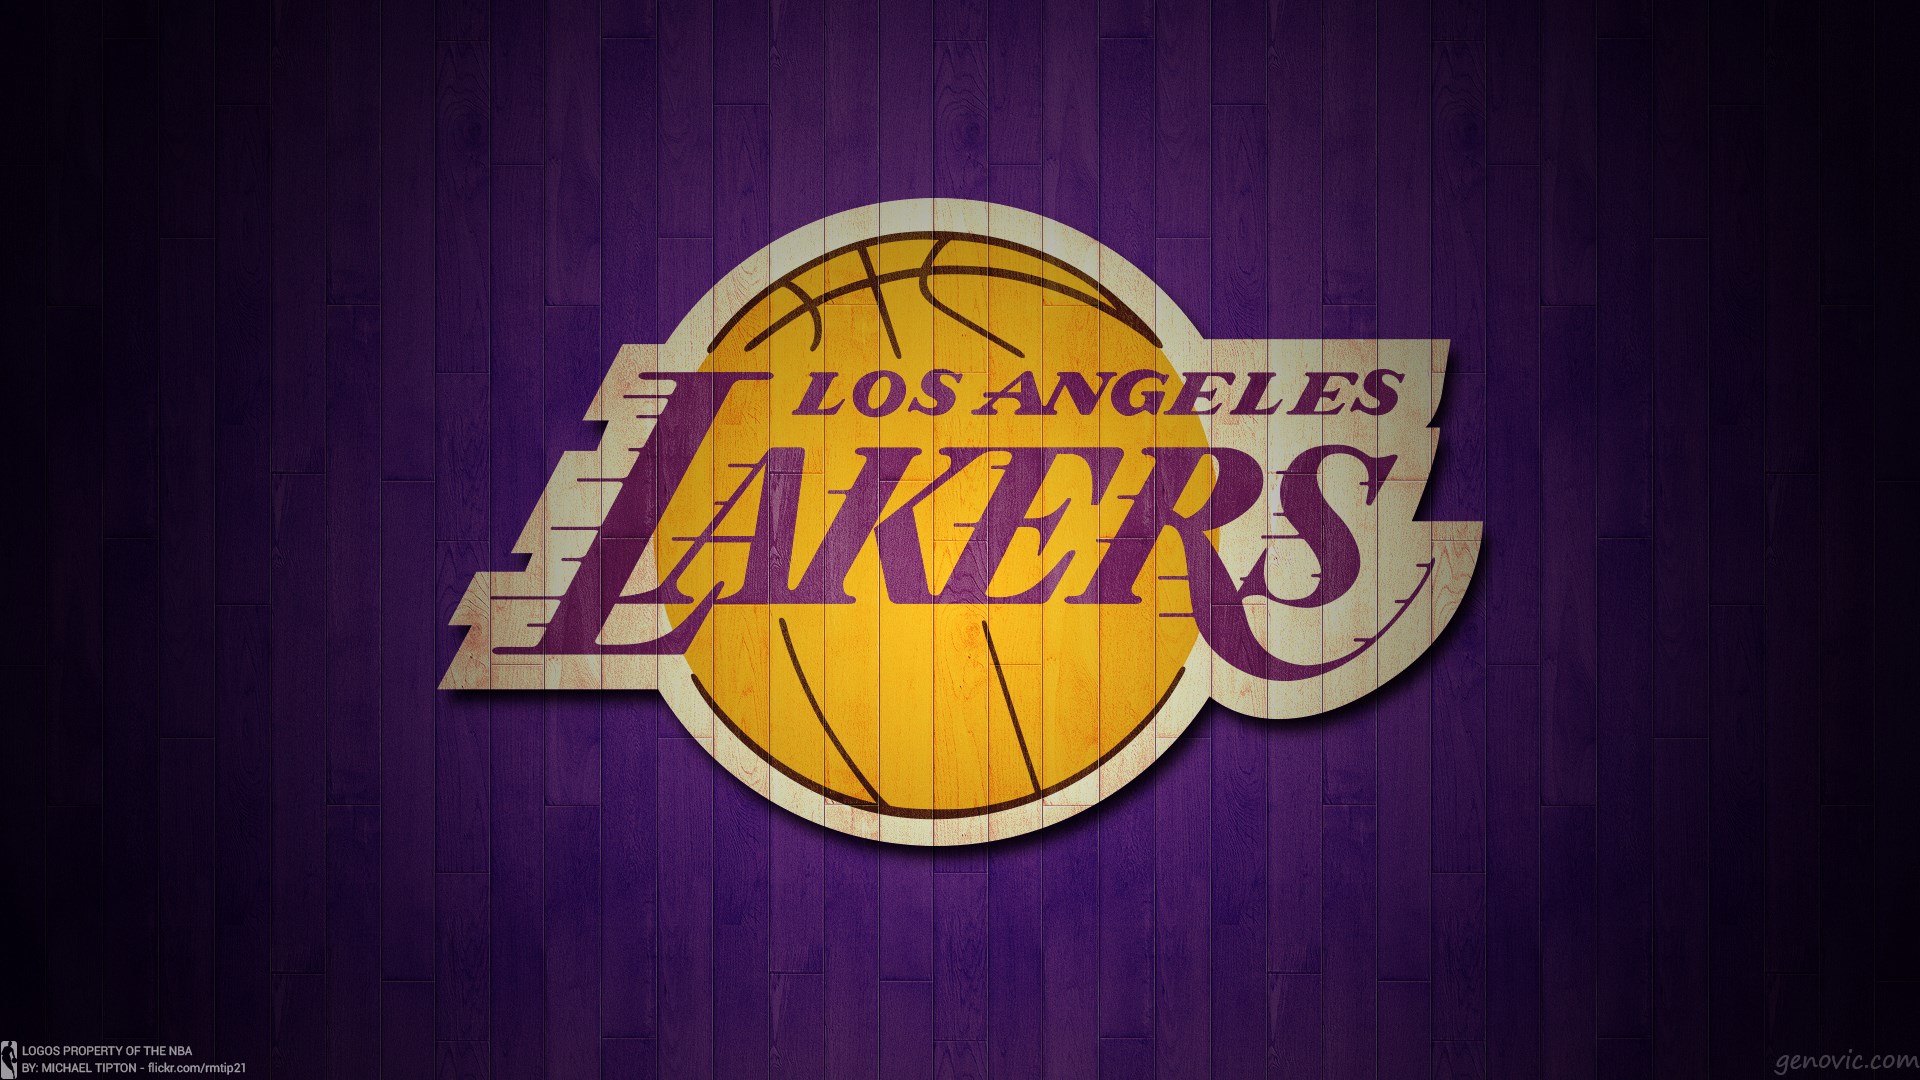 Los Angeles Lakers Wallpapers HDjpg